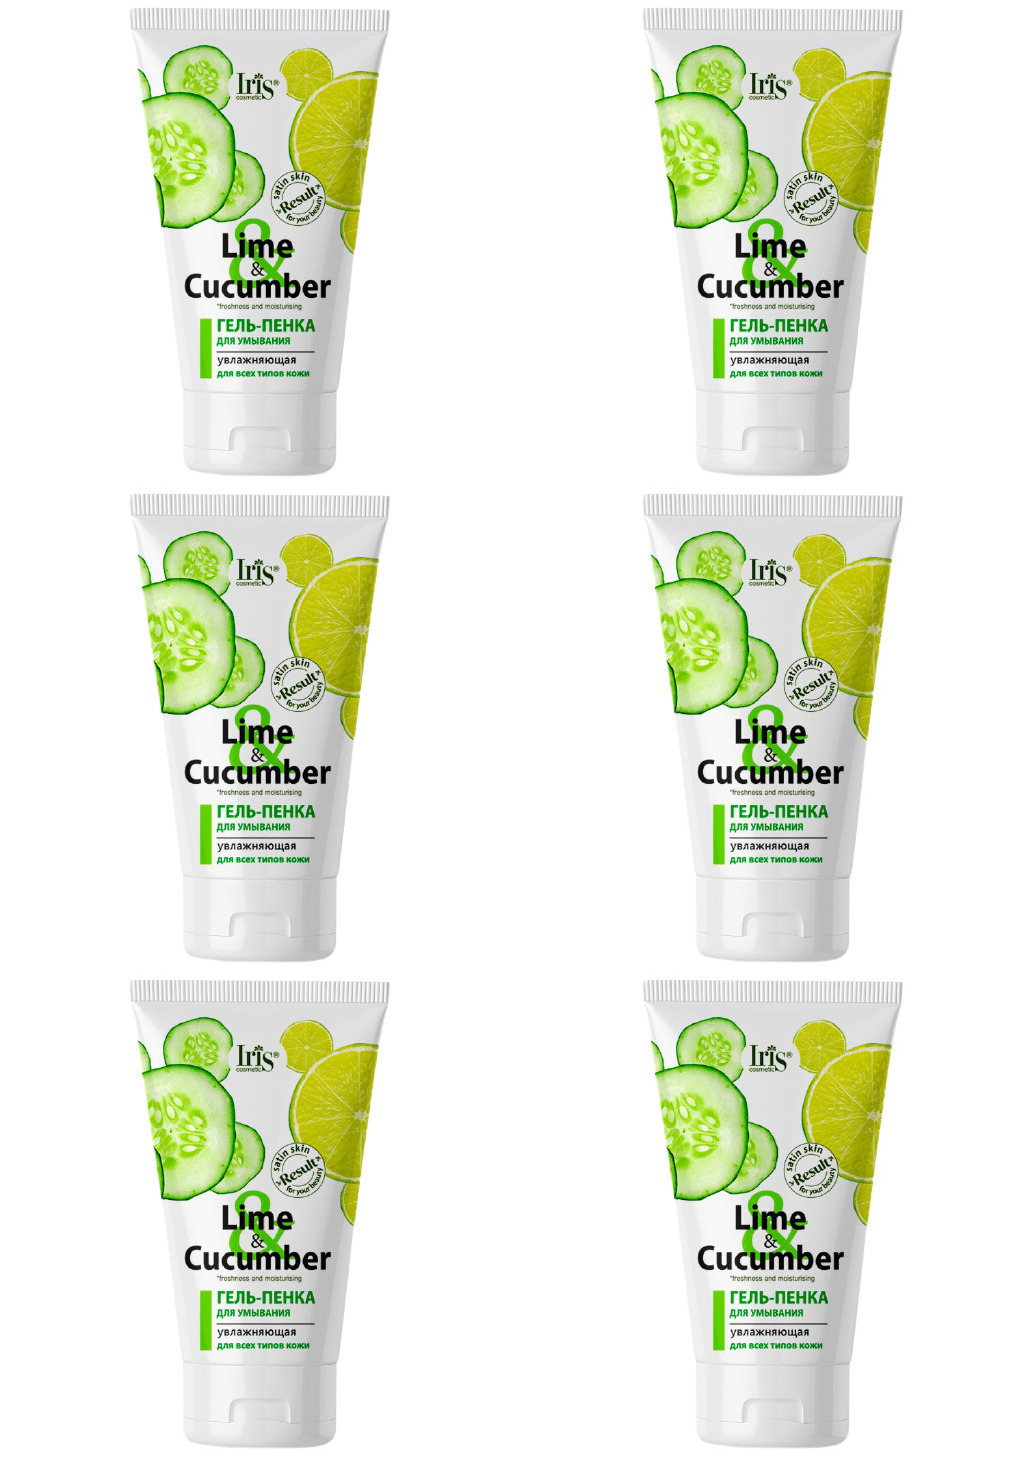 Гель-пенка Iris Lime & Cucumber для умывания Увлажняющая для всех типов кожи, 150мл, 6шт